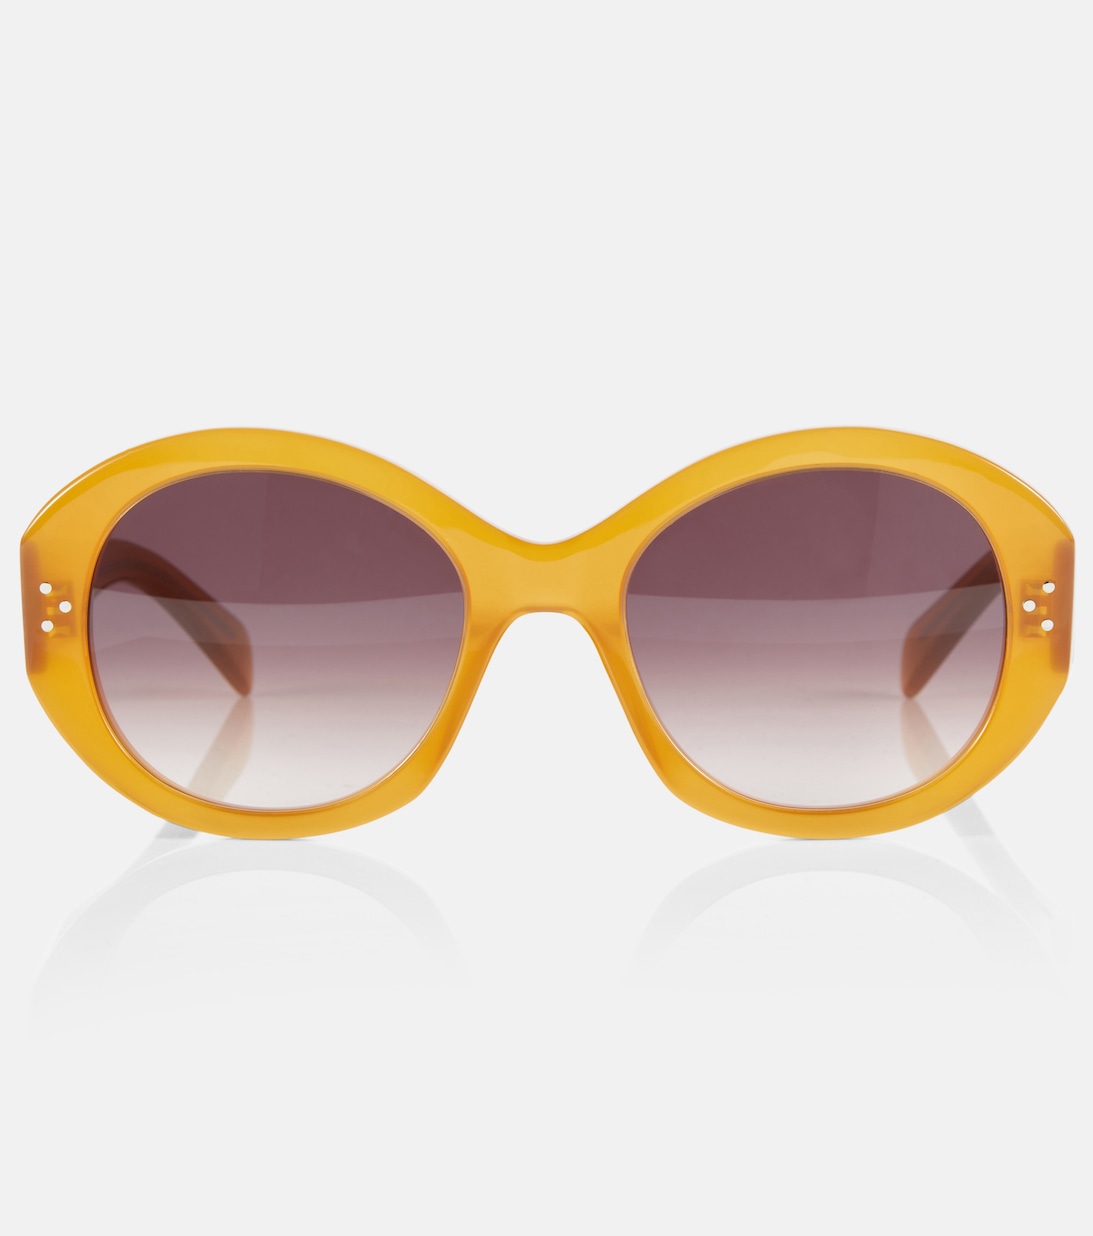 Яркие круглые солнцезащитные очки Celine, коричневый